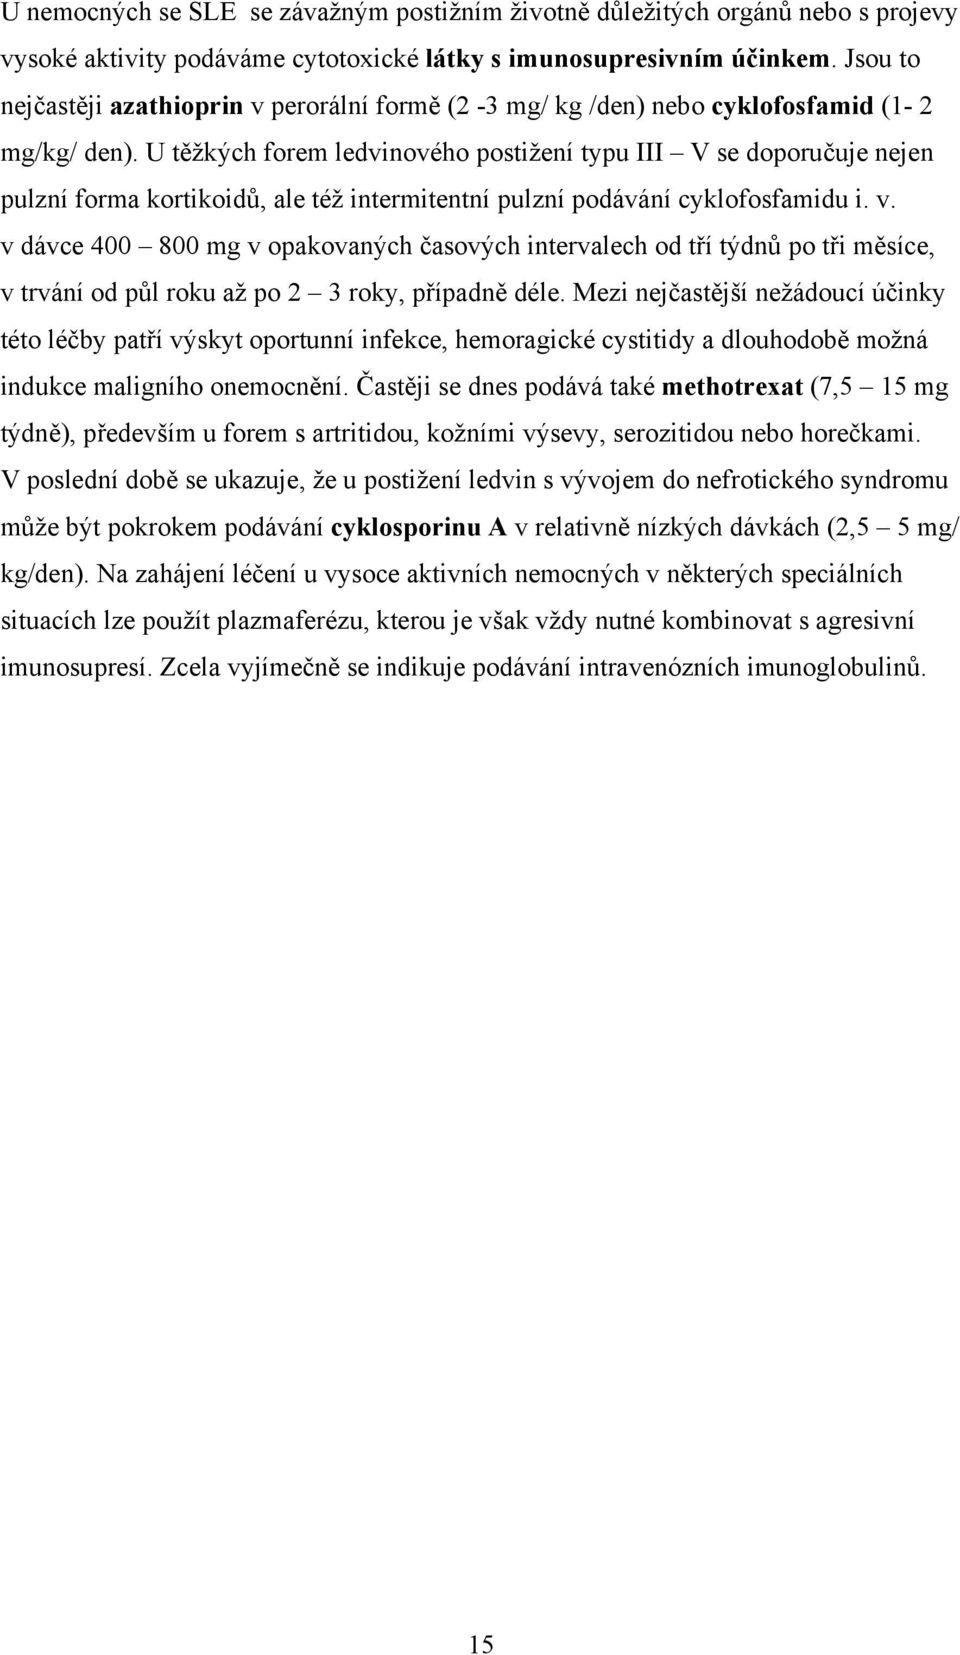 U těžkých forem ledvinového postižení typu III V se doporučuje nejen pulzní forma kortikoidů, ale též intermitentní pulzní podávání cyklofosfamidu i. v.